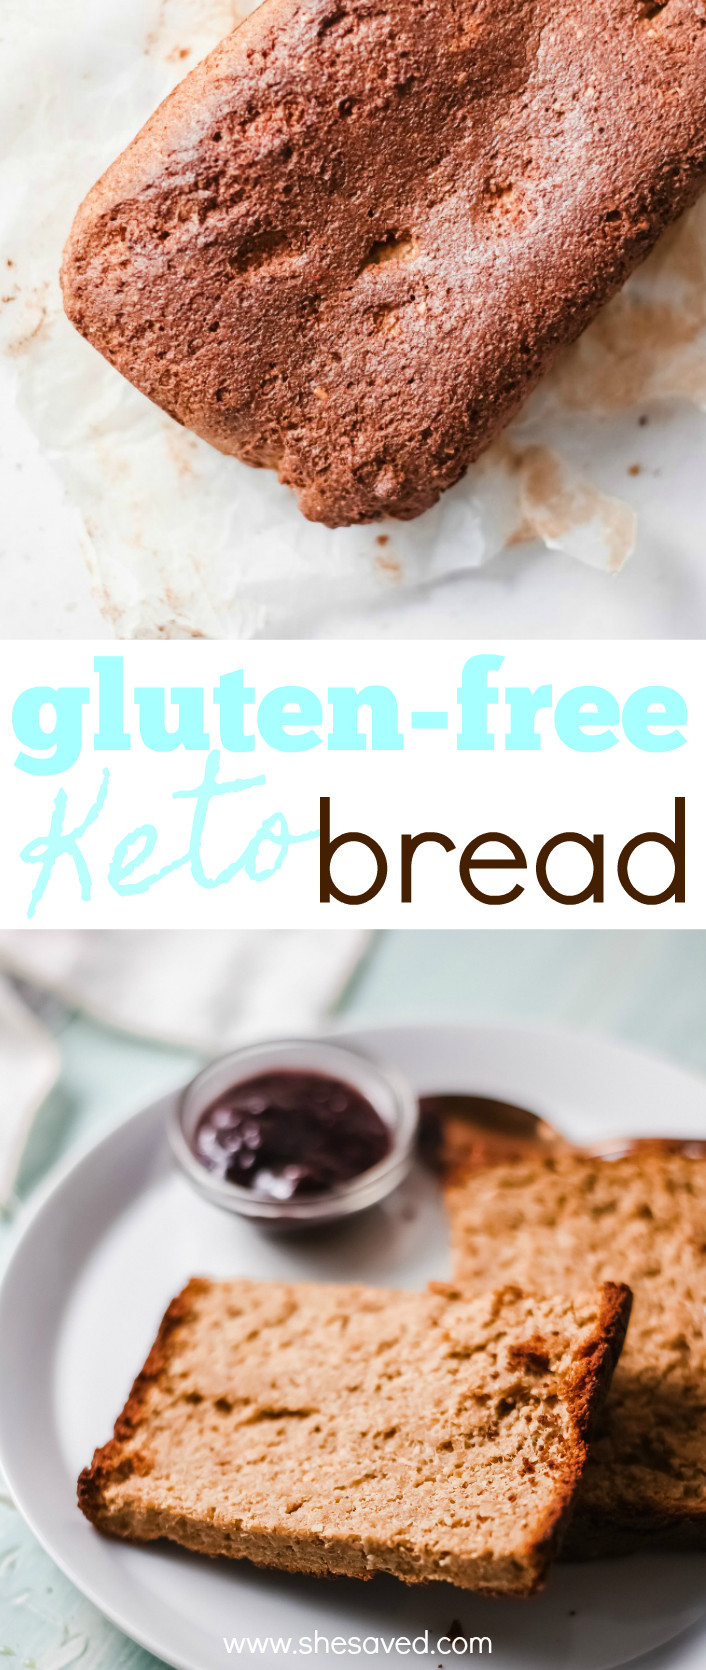 Keto Sandwich Bread Toast
 Gluten Free and Keto Sandwich Bread Recipe SheSaved